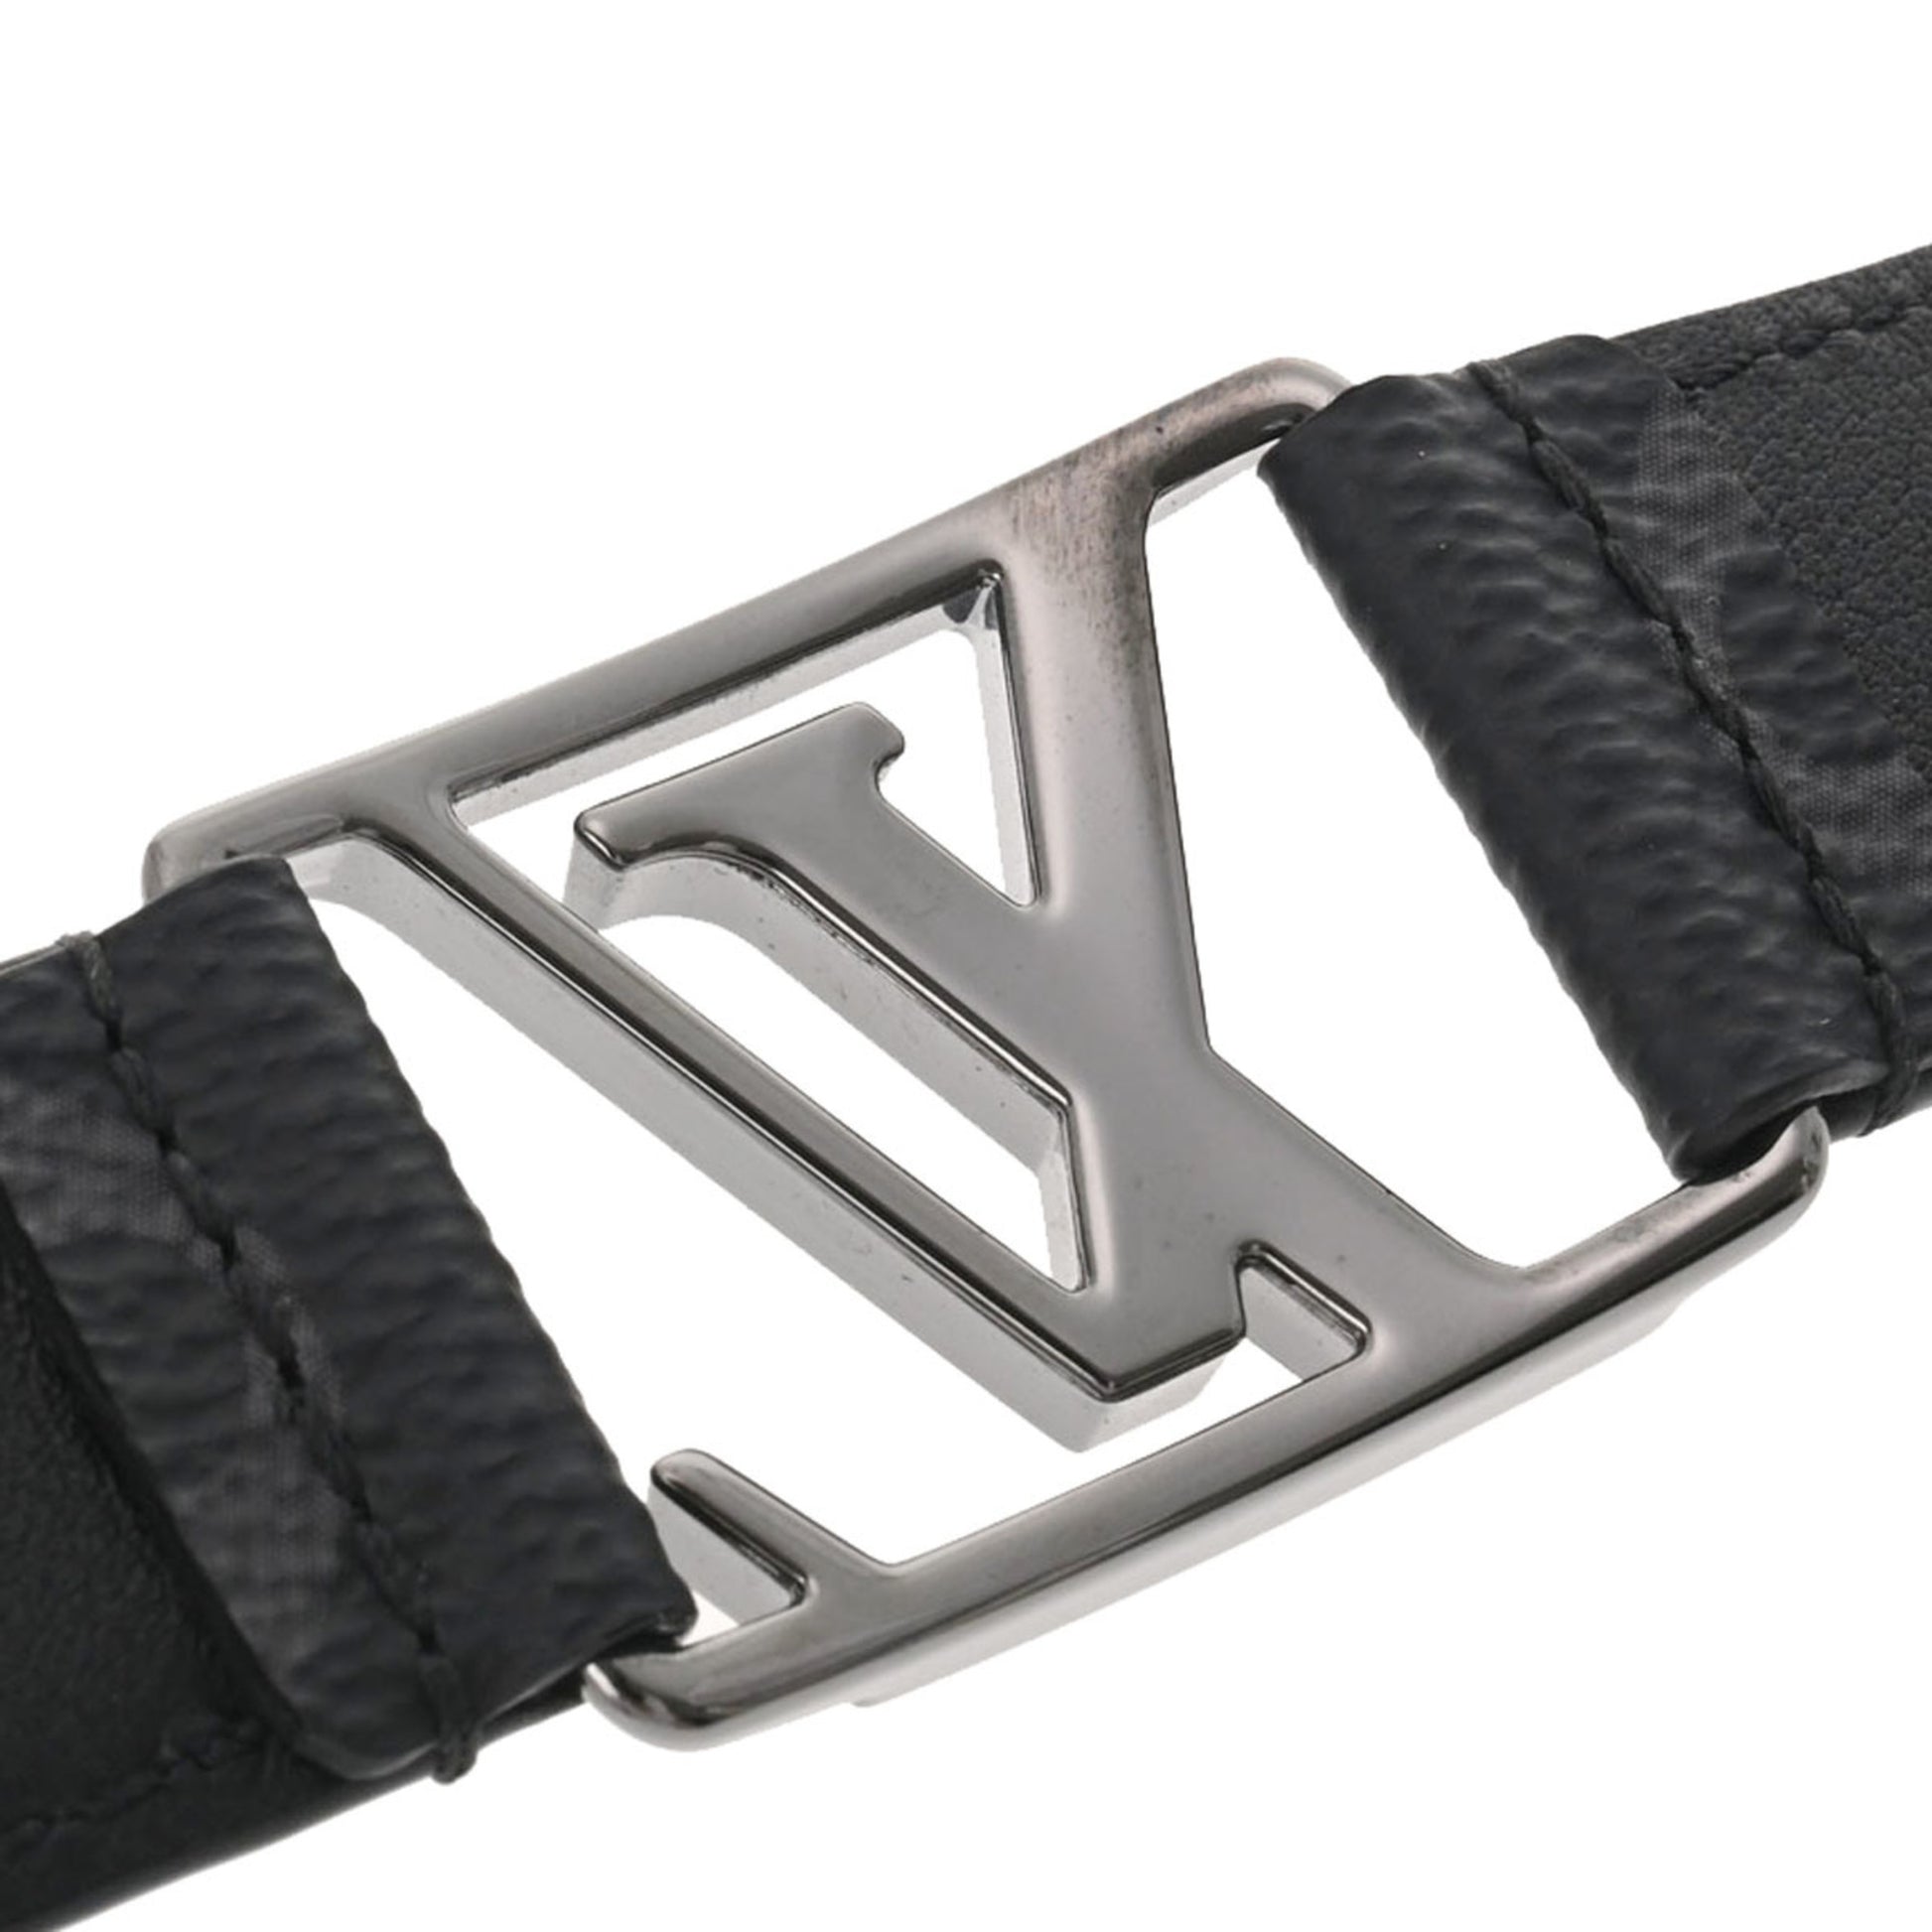 Louis Vuitton Monogram Eclipse Bracelet – Haiendo Shop